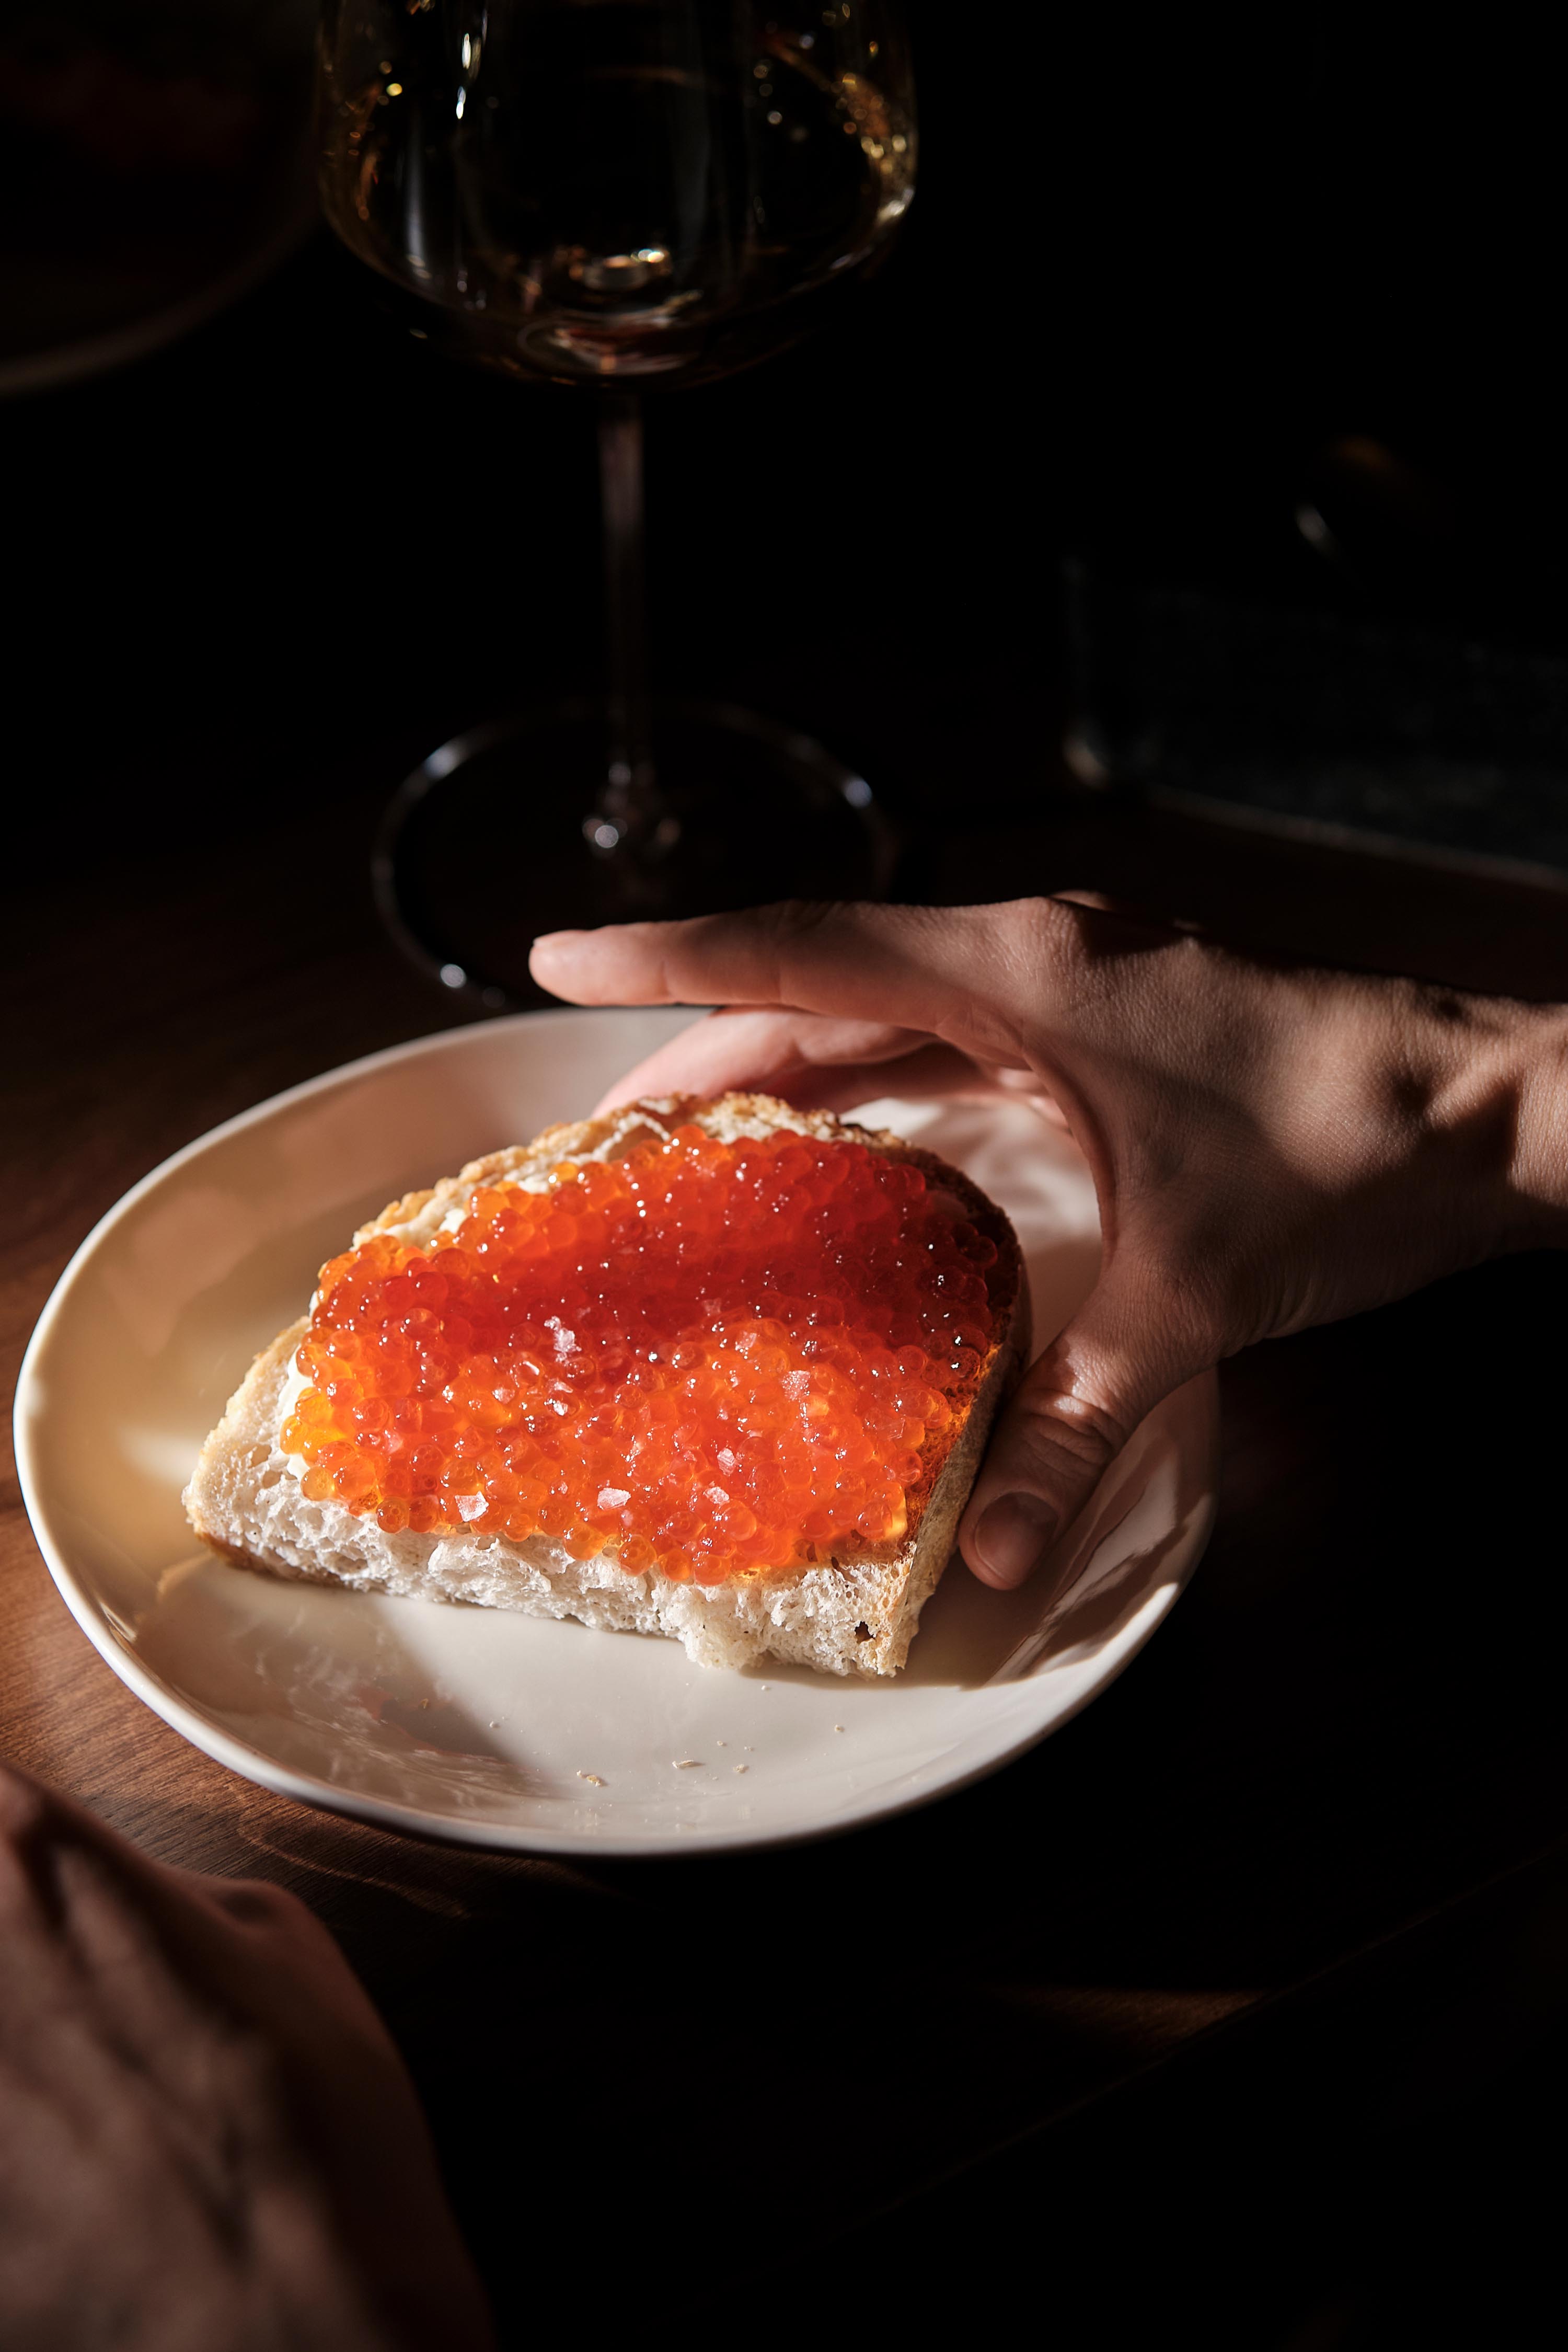 Новости ресторанов: берлинский карривурст, крудо из дорадо и бутерброд с красной икрой (фото 2)